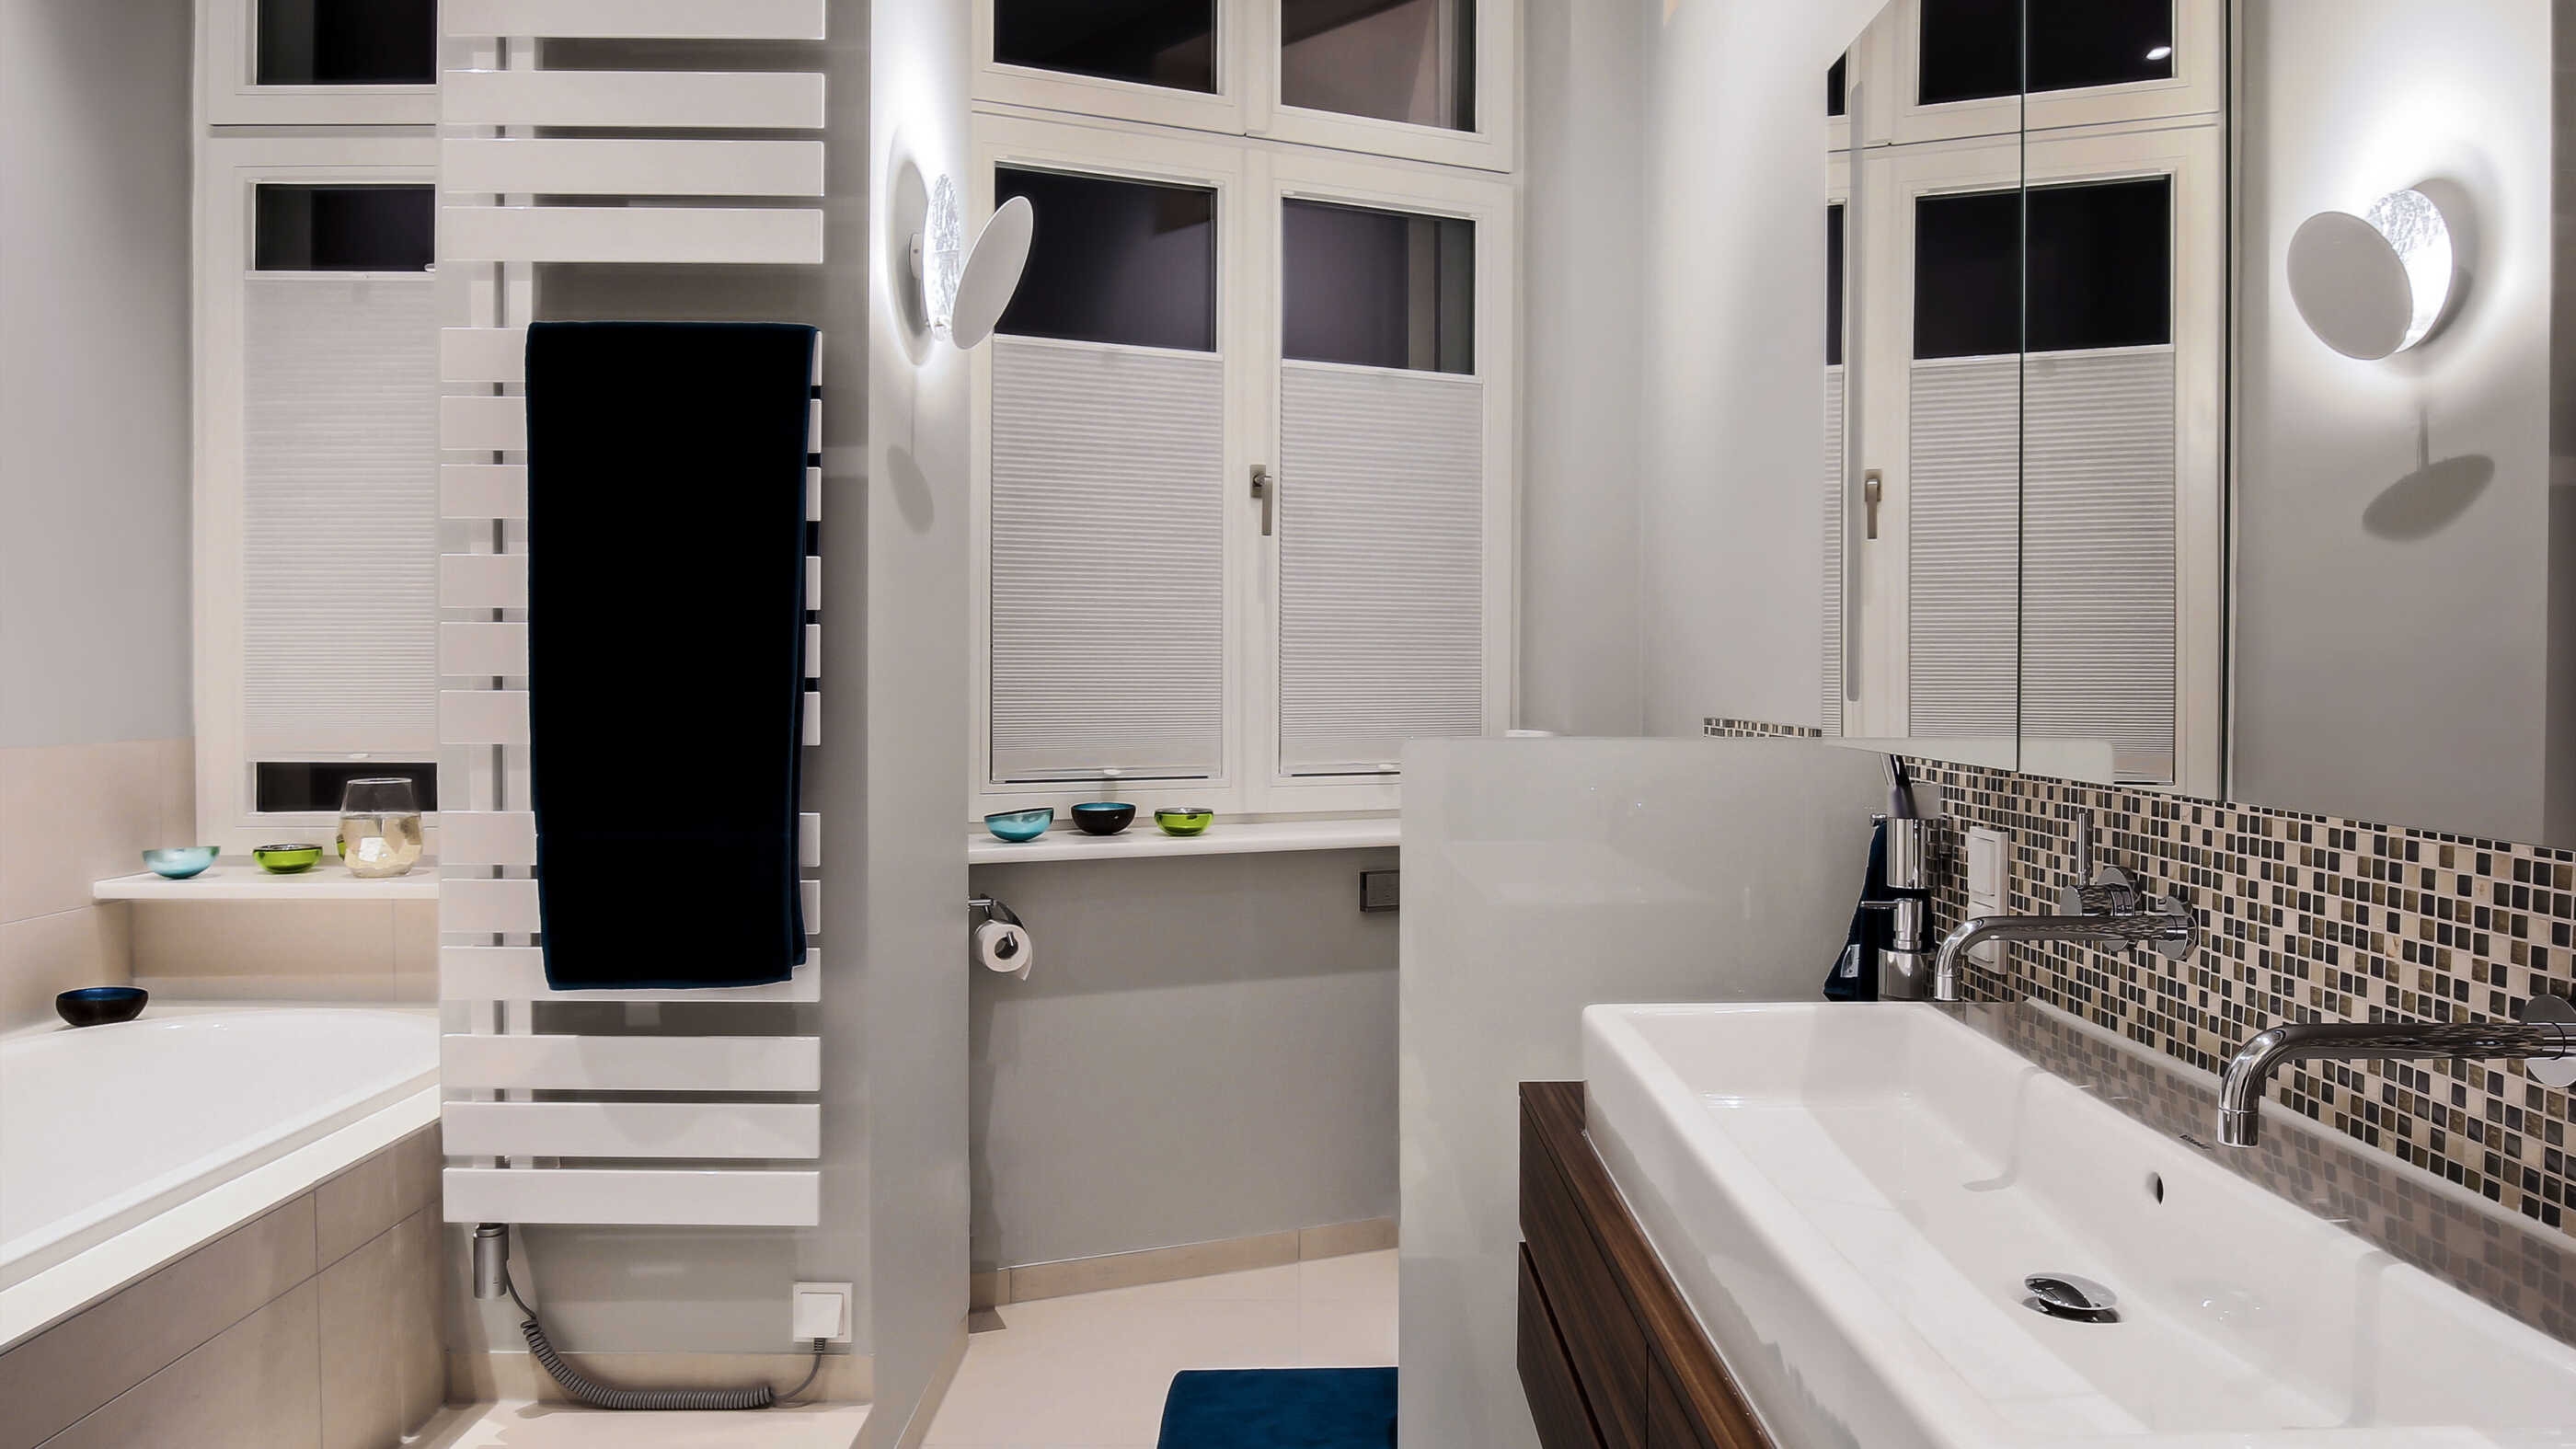 Blick in ein helles Badezimmer: Zwei Wandleuchten sorgen für indirektes, stimmungsvolles Licht. (Foto: Prediger Lichtberater)